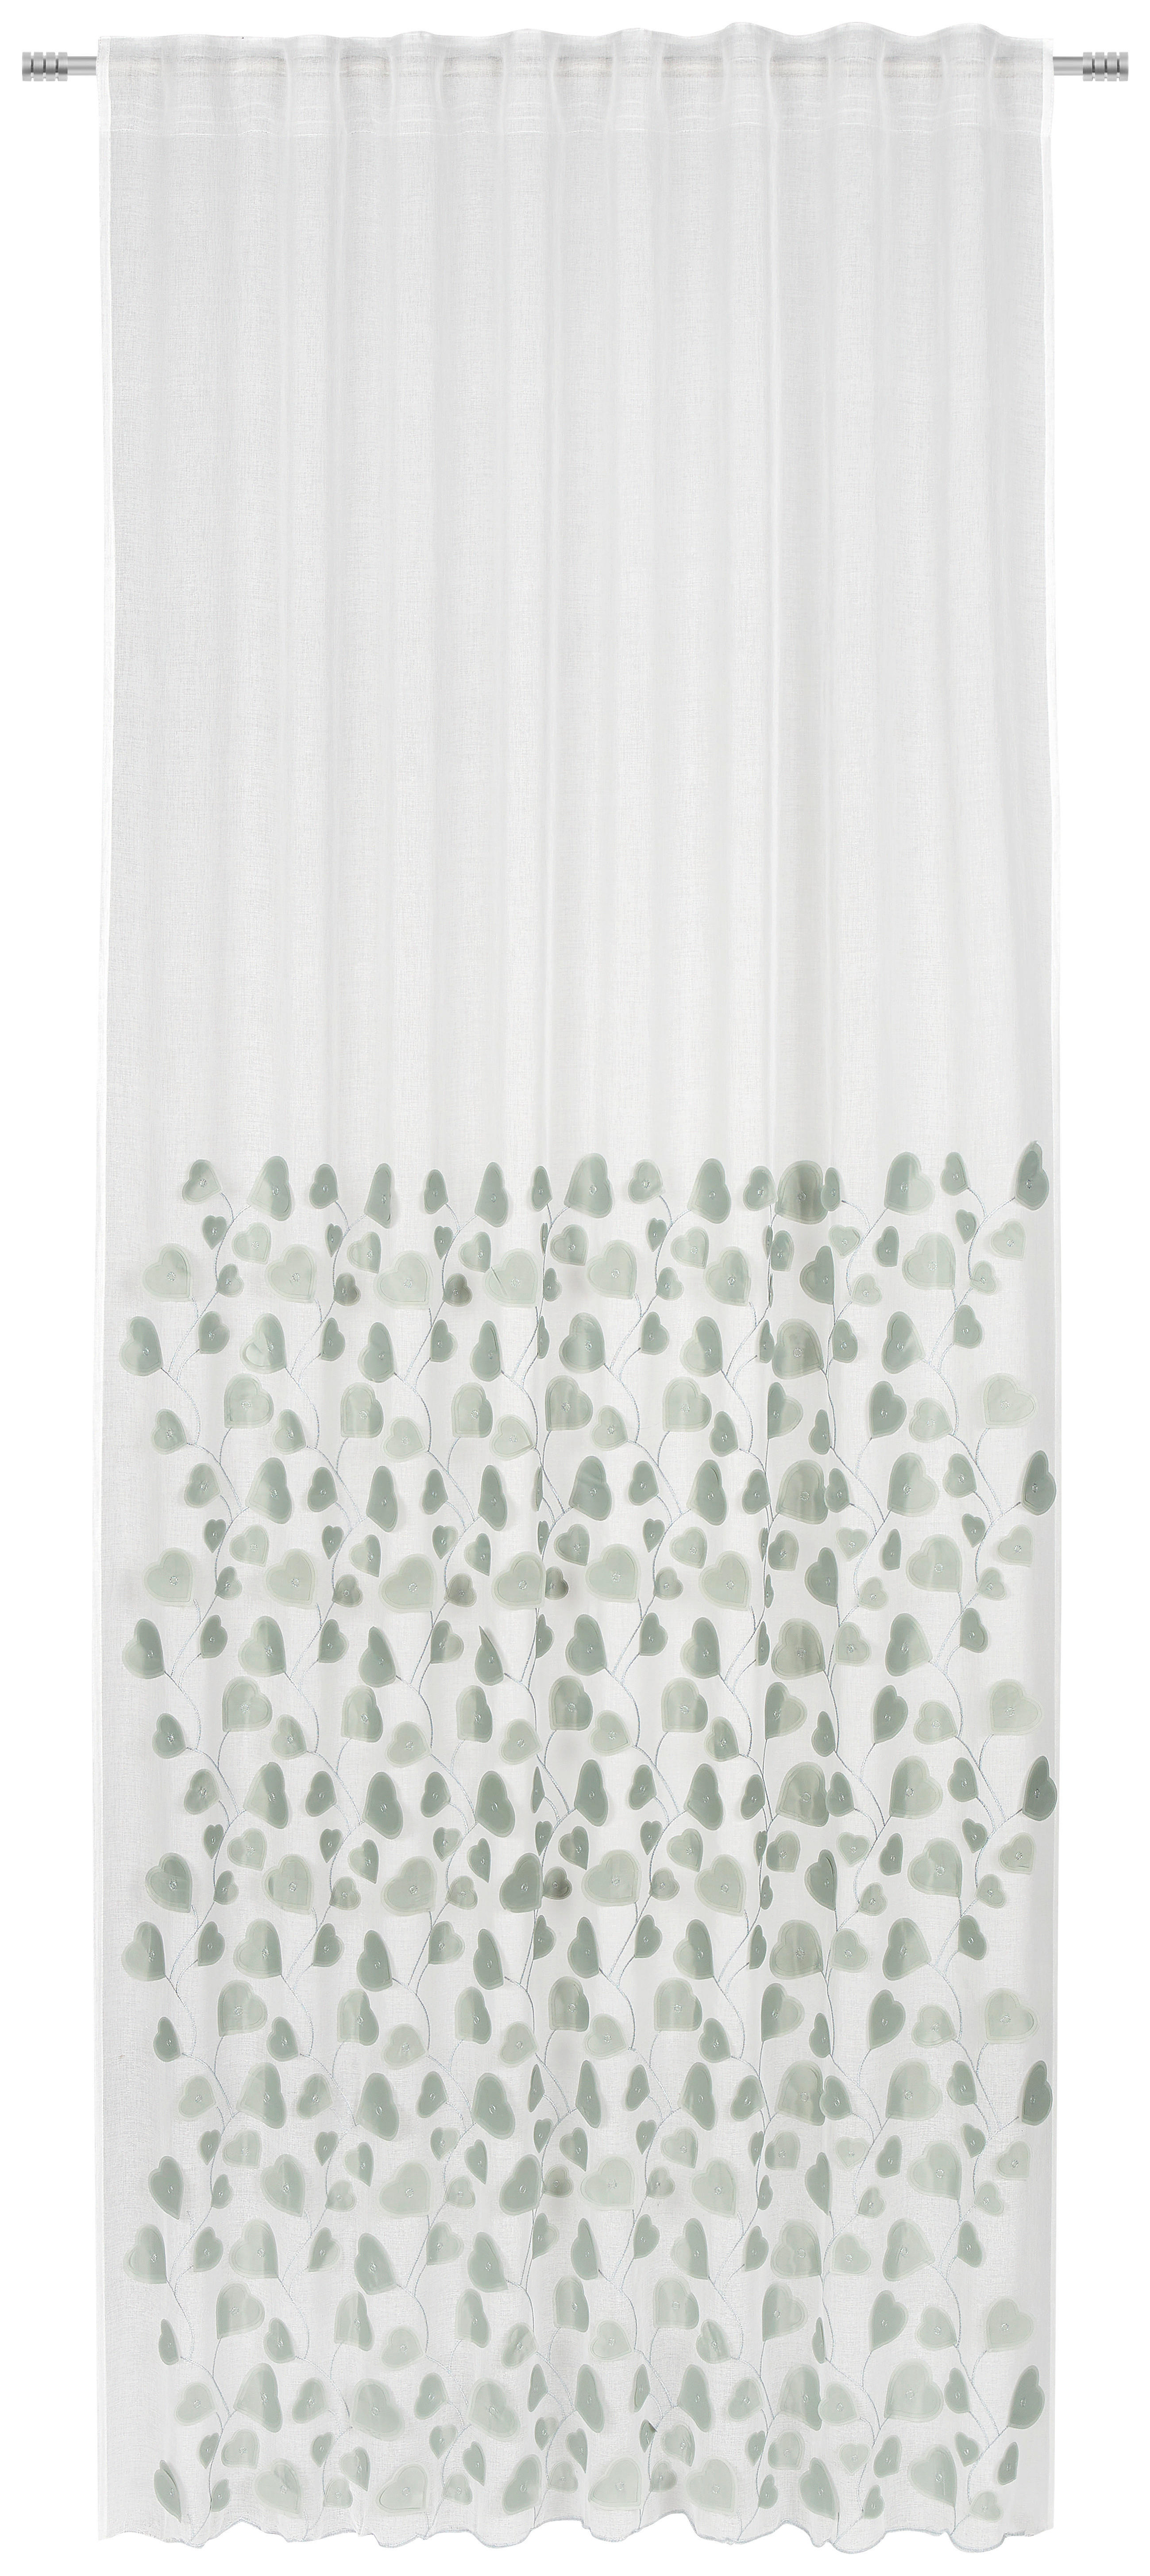 HOTOVÝ ZÁVES, priehľadné, 135/245 cm - jadeitovozelená/biela, Design, textil (135/245cm) - Esposa